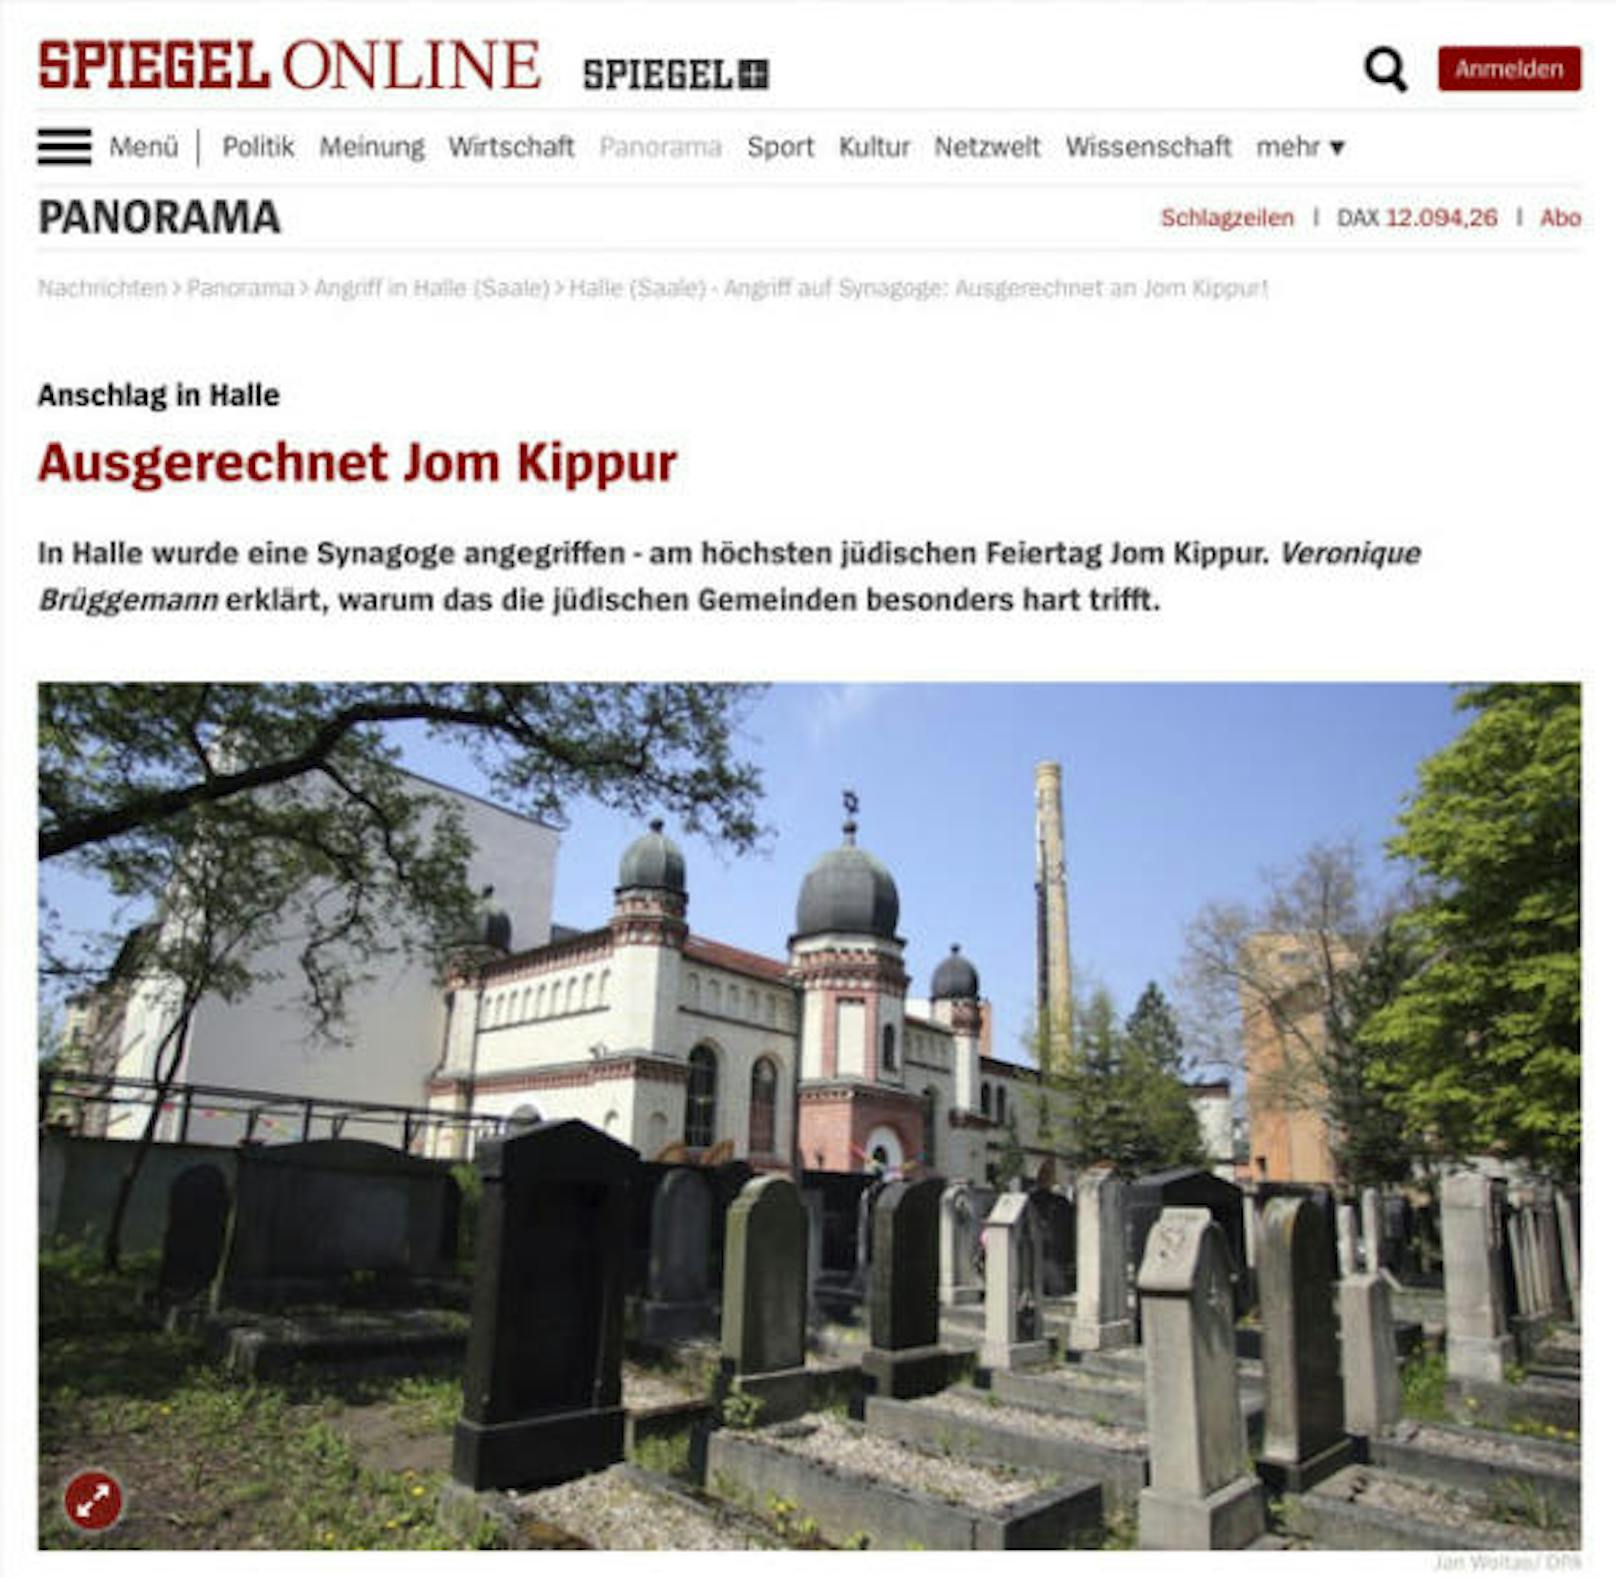 <b>"Ausgerechnet Jom Kippur"</b>
"In Halle wurde eine Synagoge angegriffen - am höchsten jüdischen Feiertag Jom Kippur", schreibt "Spiegel Online". "Wer an diesem Tag eine Synagoge angreift, weiß vermutlich, dass dort Juden beten."